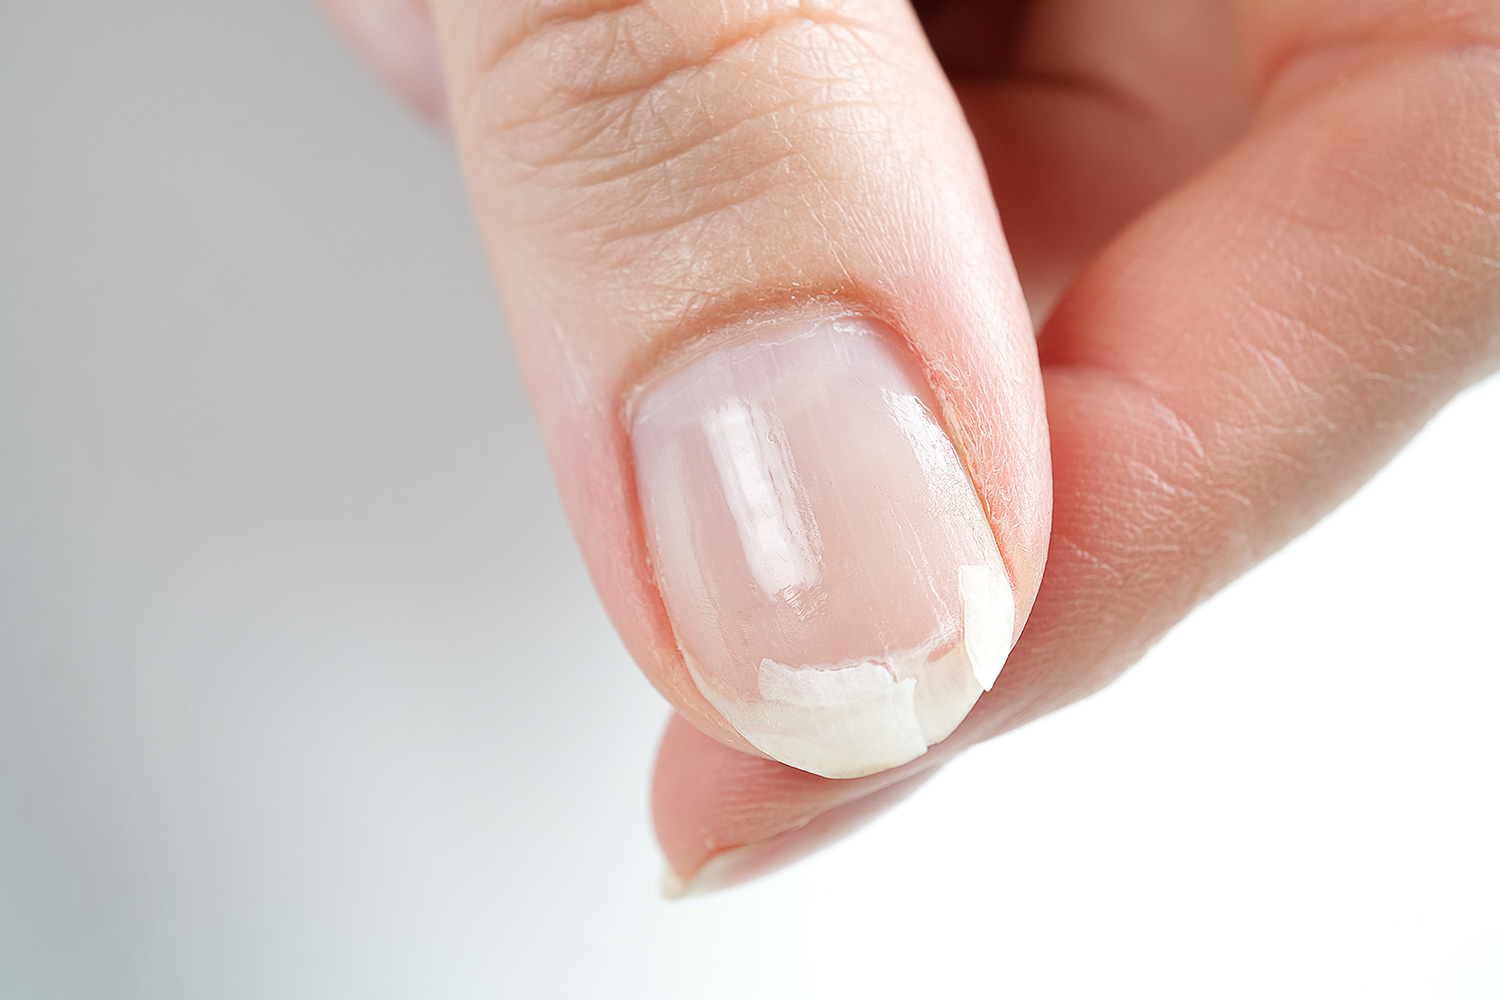 Por que se rompen las uñas?: motivos, tratamientos y prevención